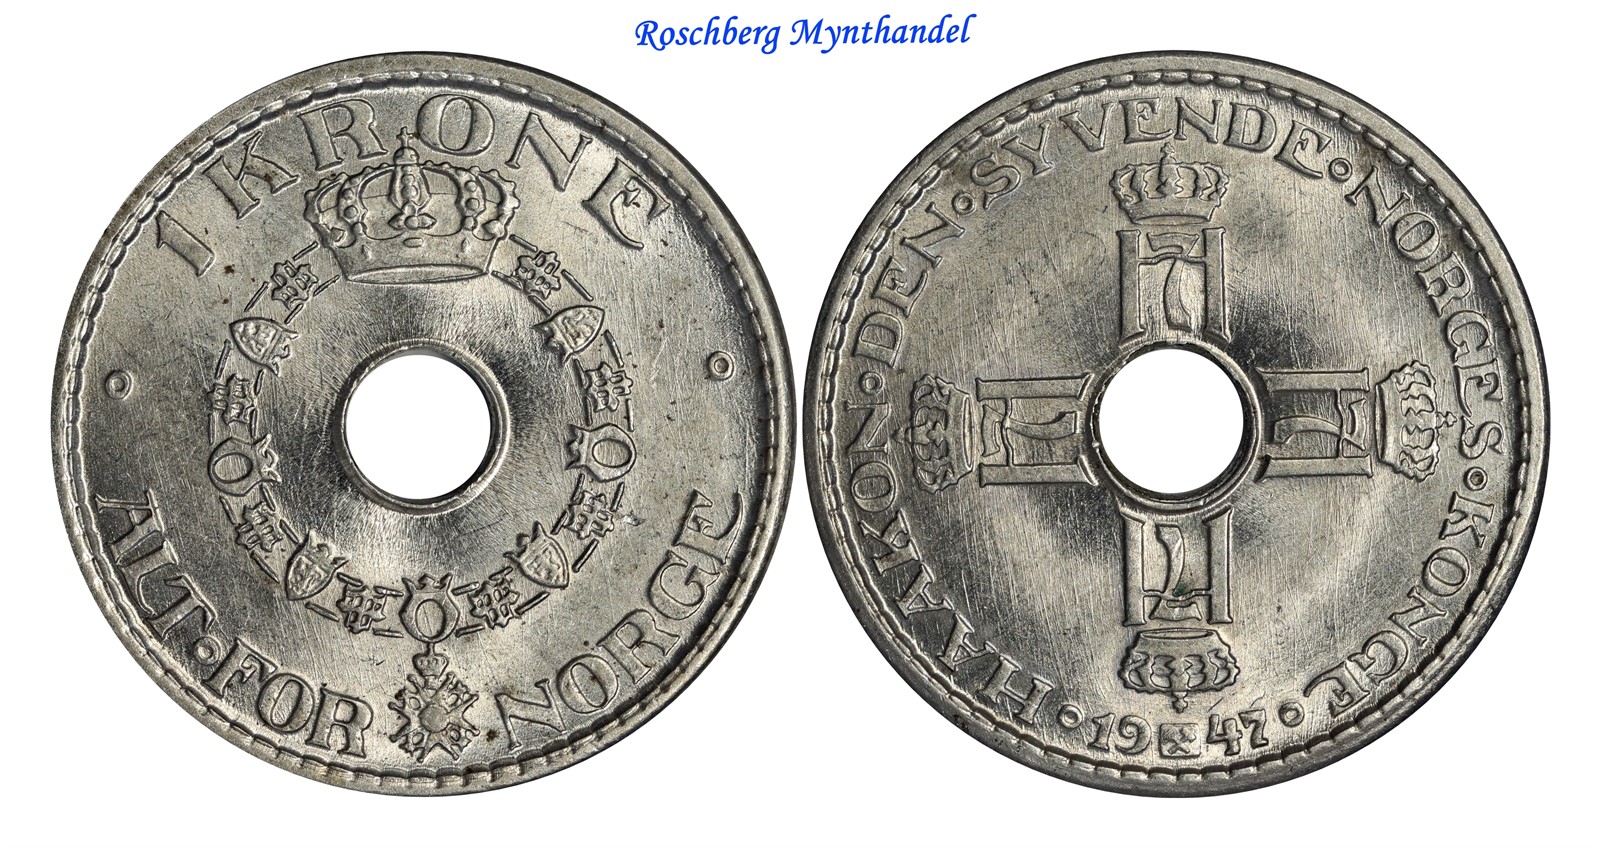 1 Krone 1947 Kv 0, vakker